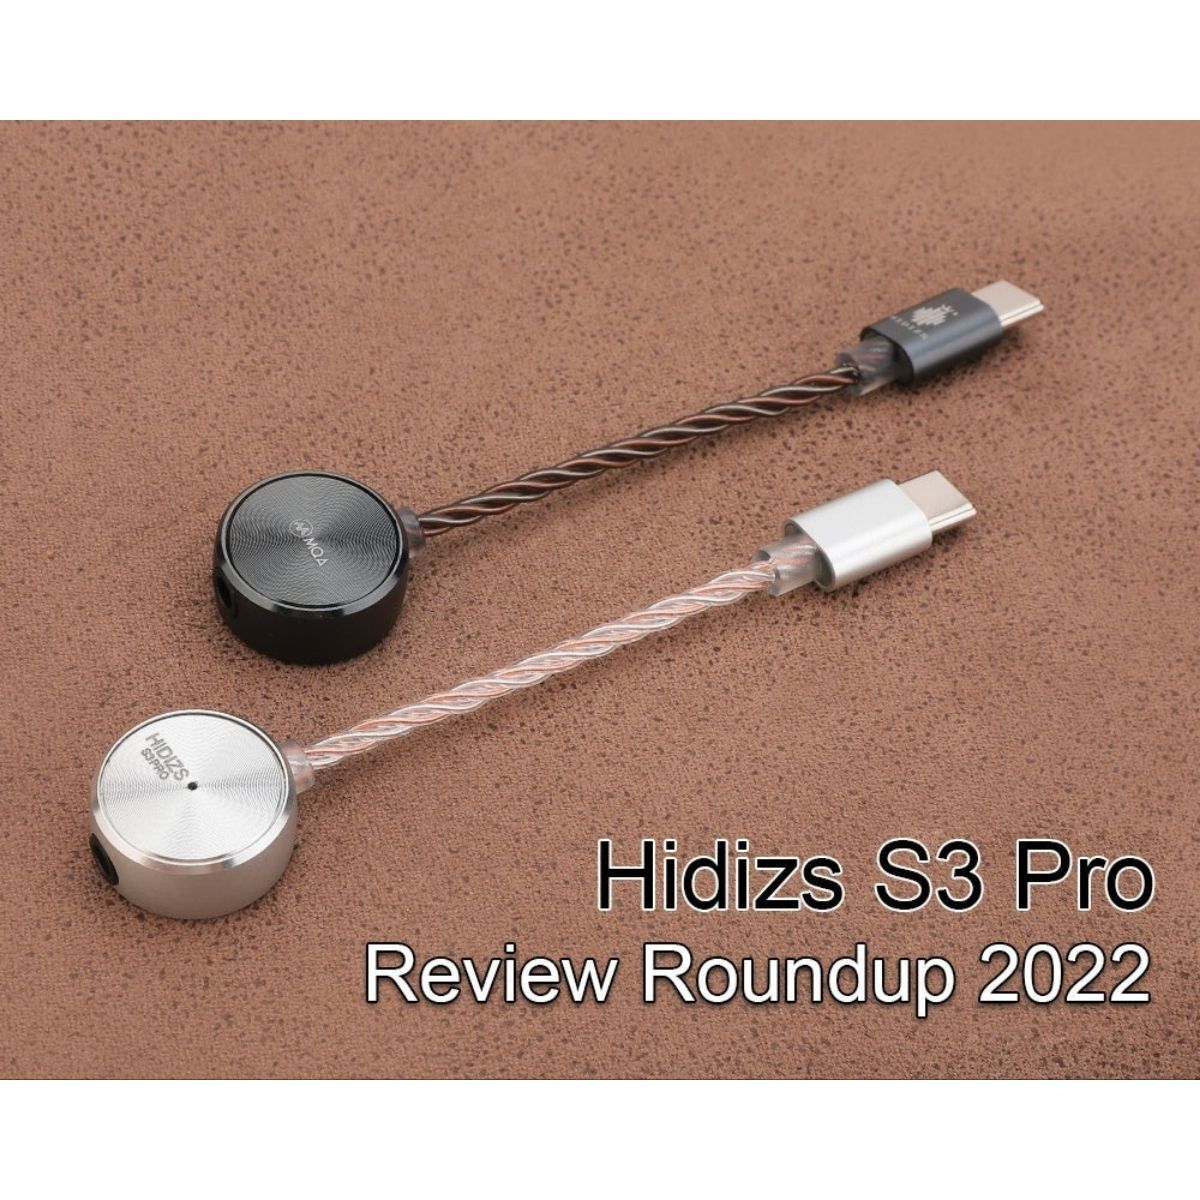 Hidizs S3 Pro